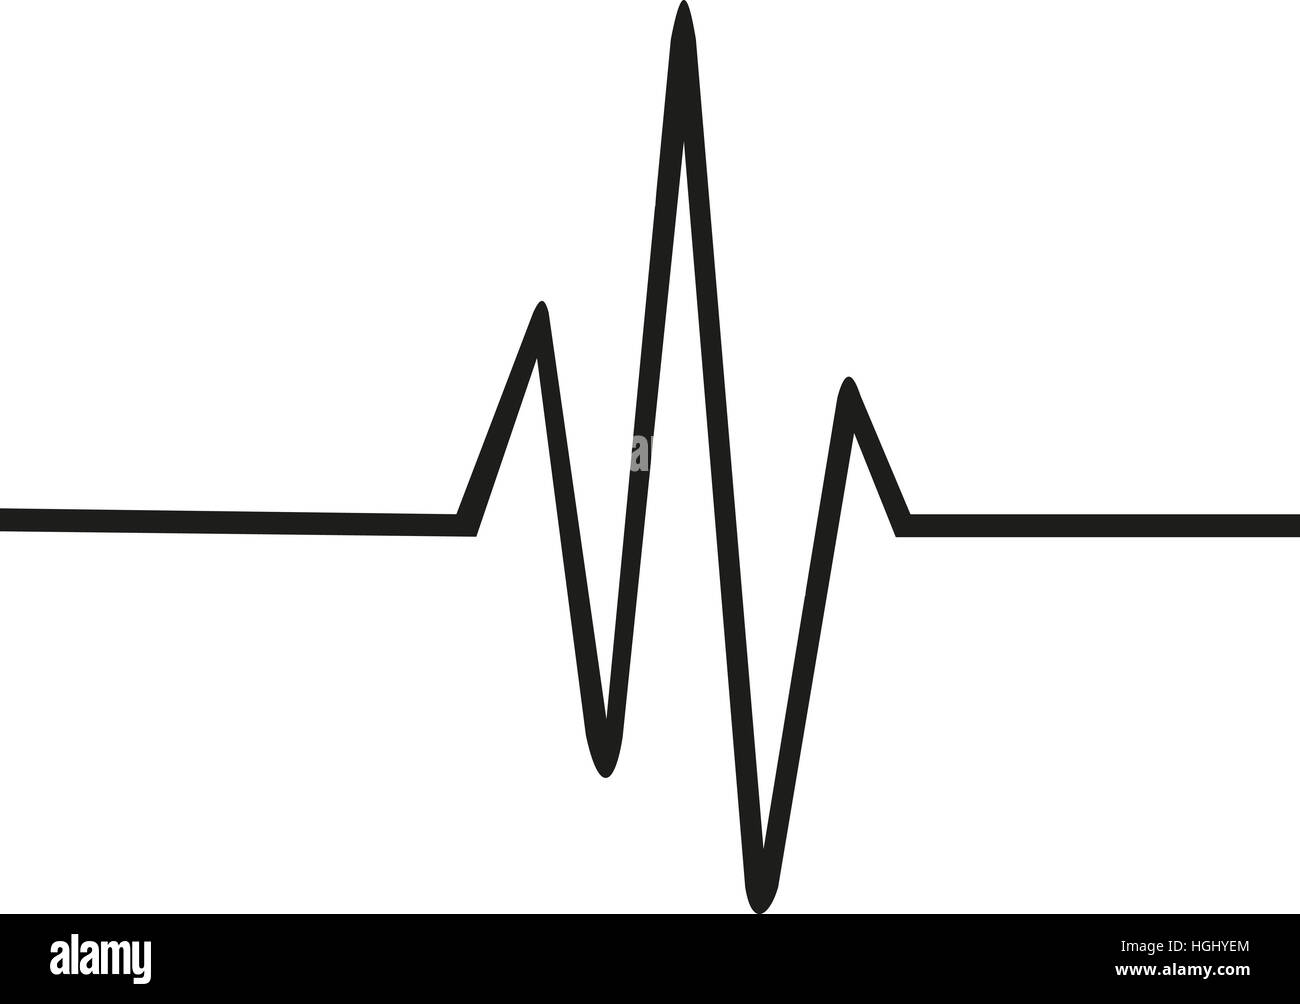 Sottile linea di heartbeat Foto Stock